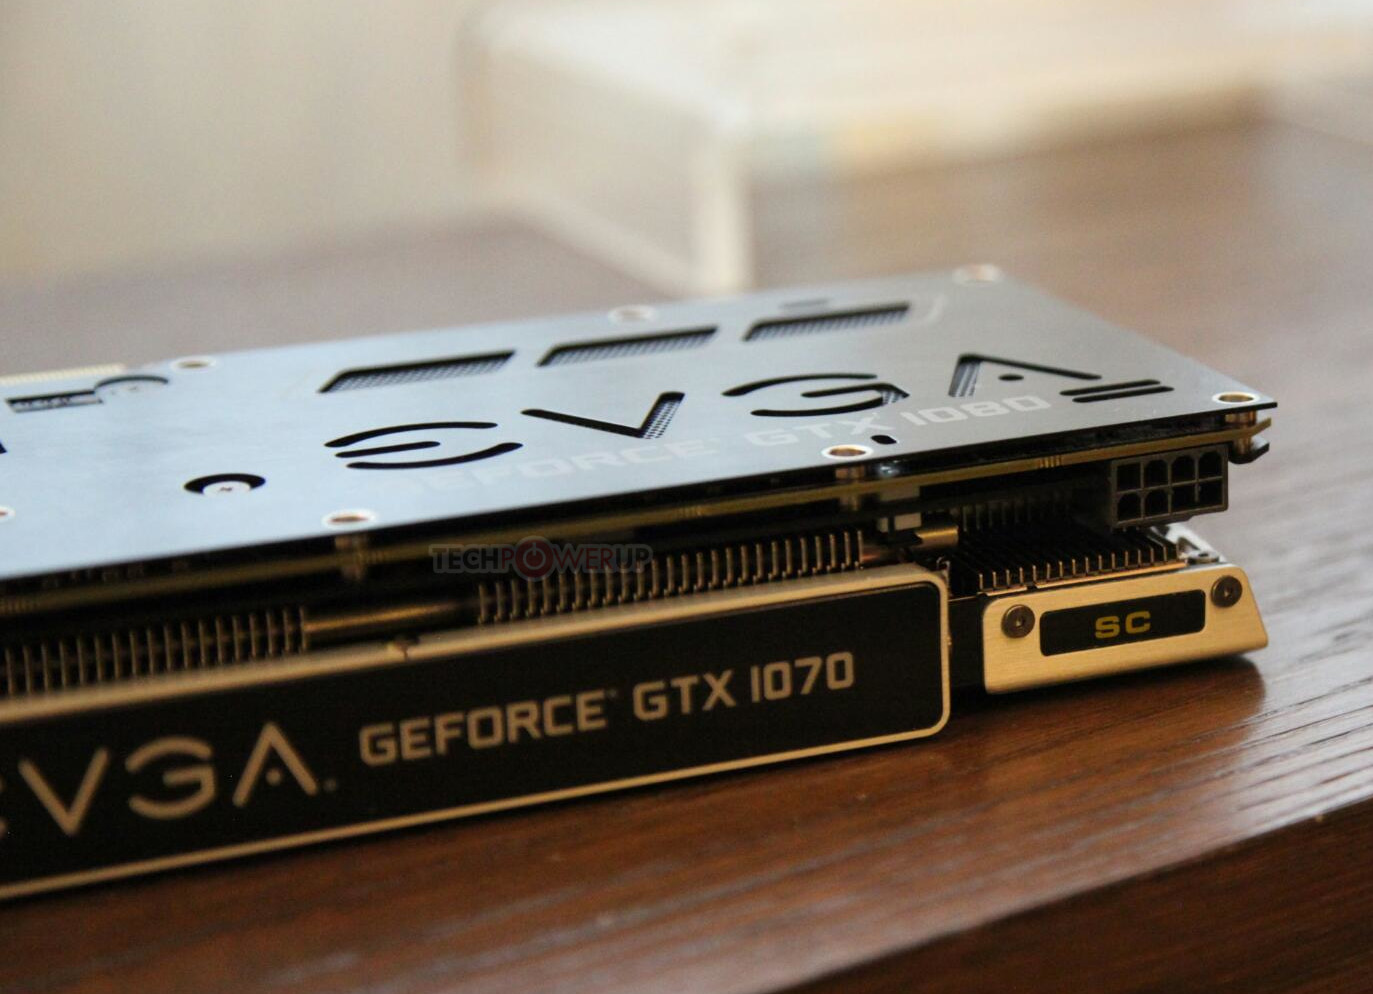 EVGA GeForce GTX 1070 SC Pictured 